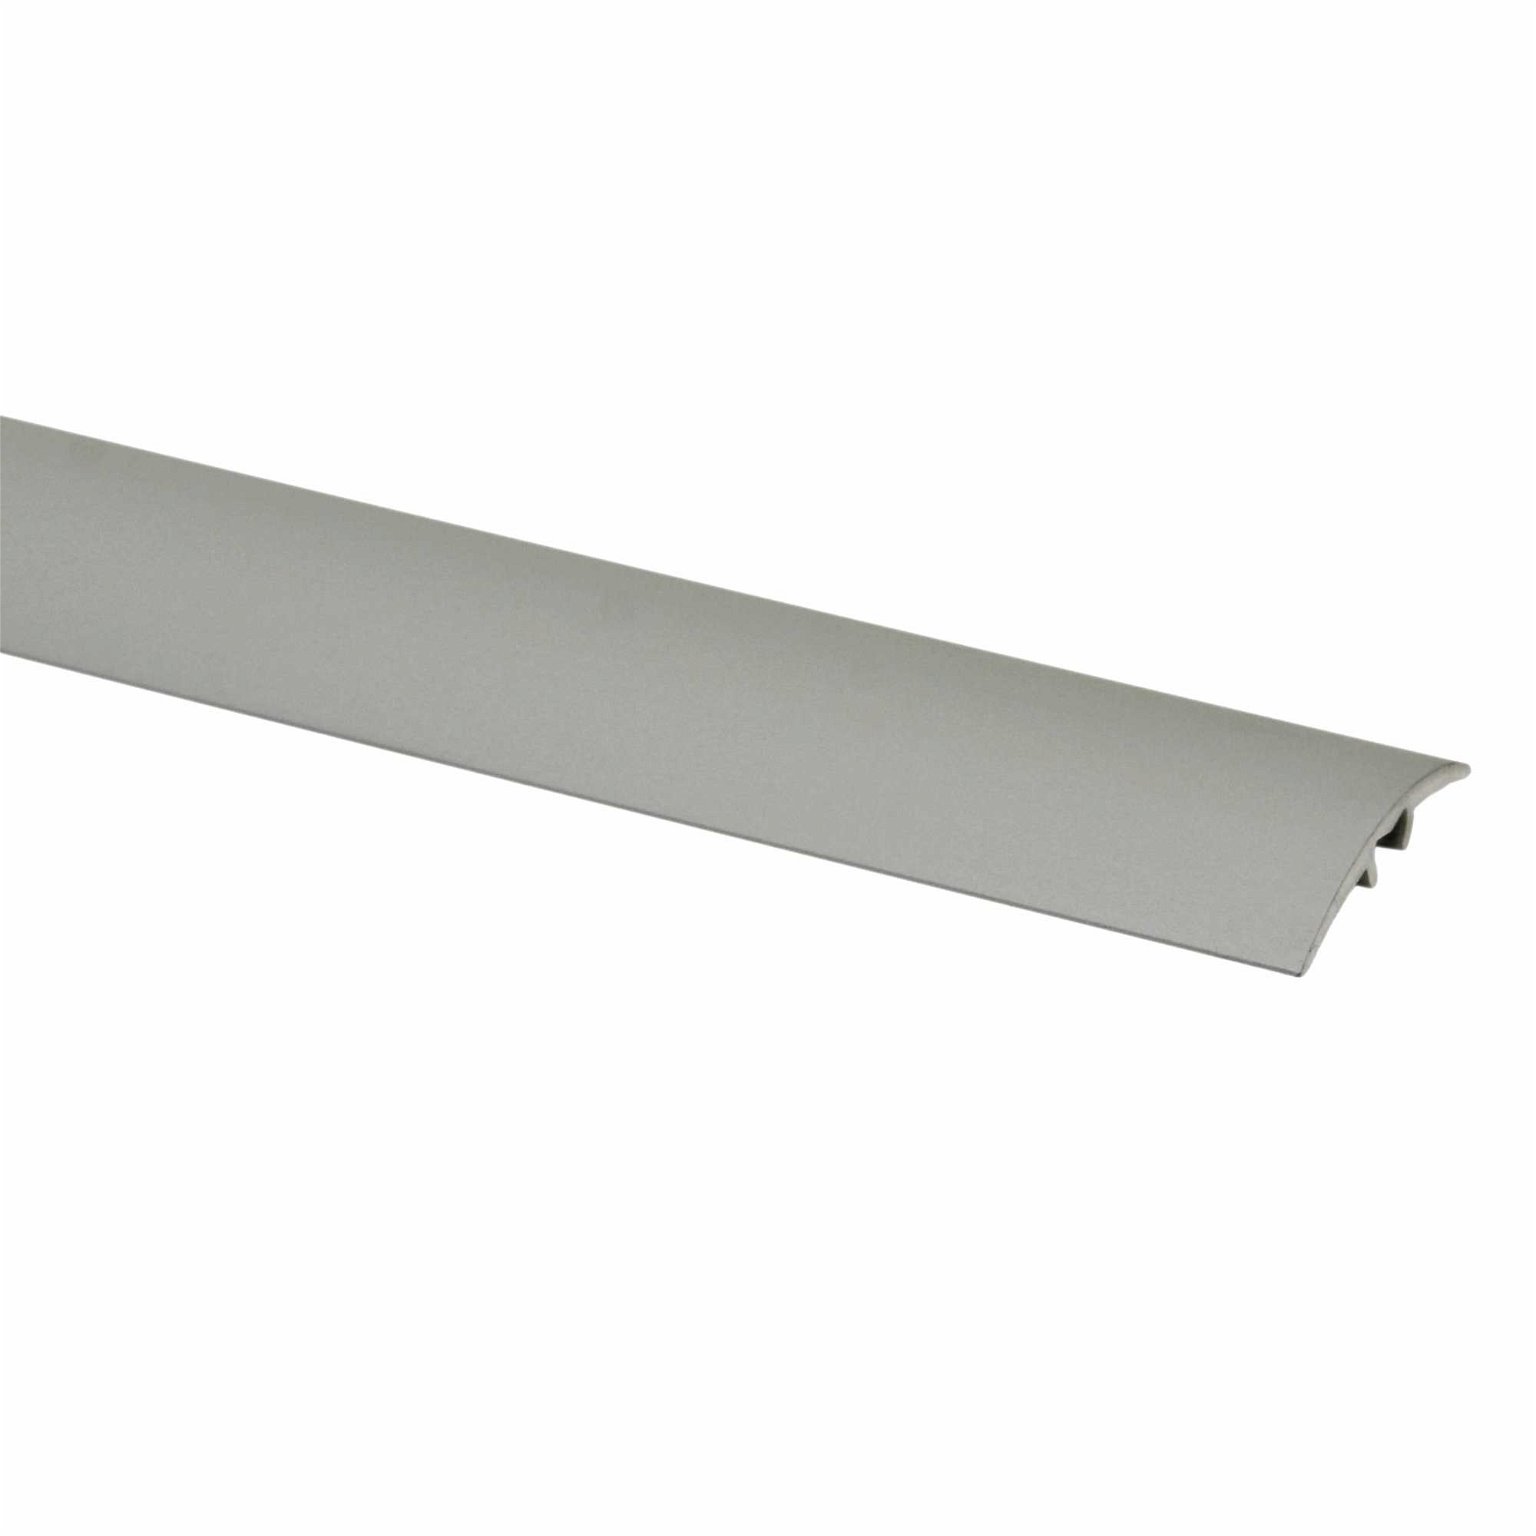 Aliumininė grindų juostelė PR3K A1, sidabro sp., 30 mm pločio, 93 cm ilgio